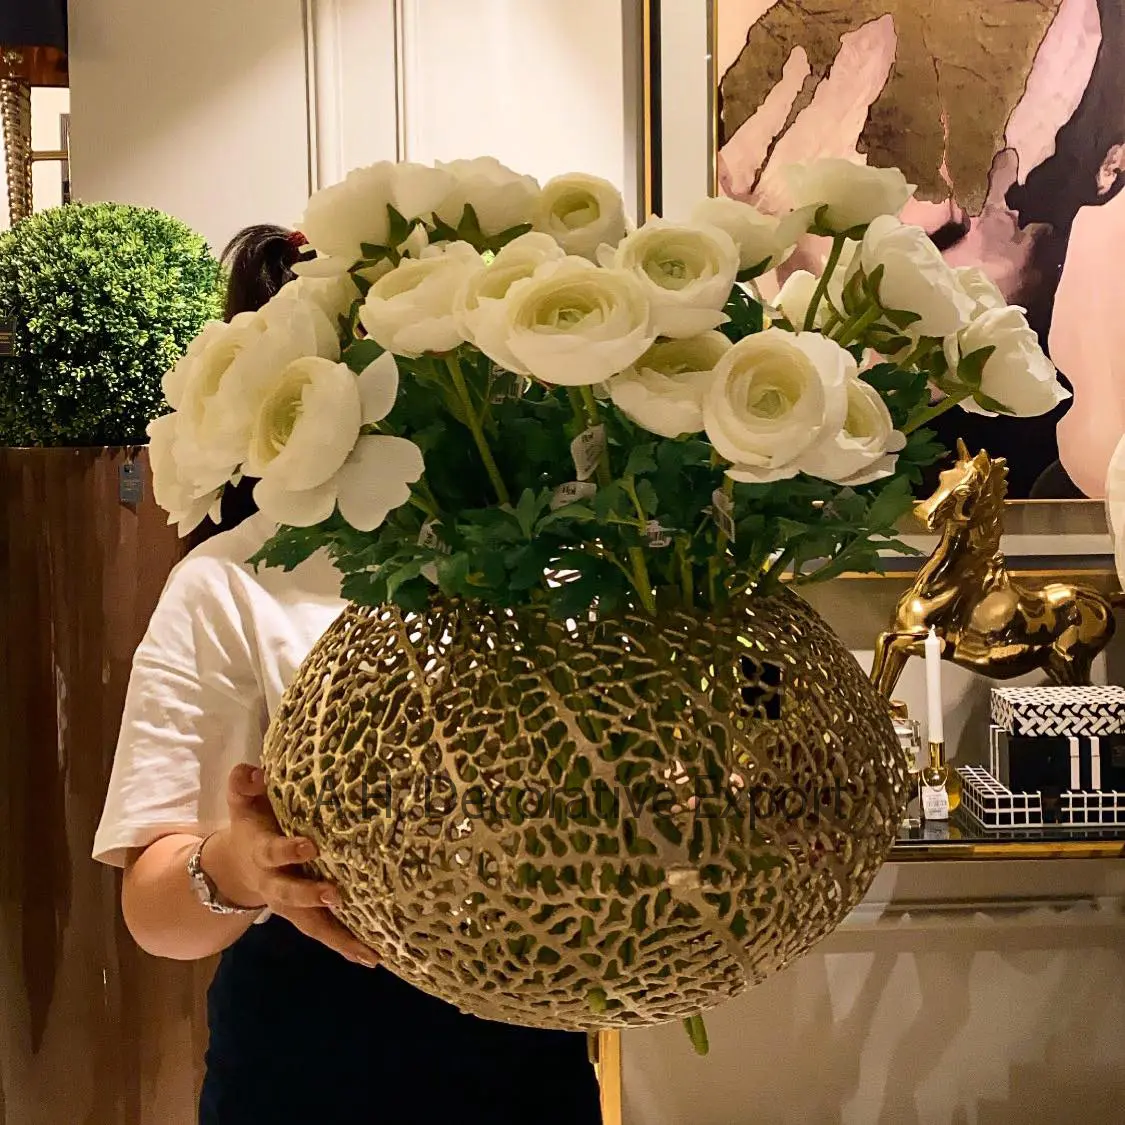 Antika tasarımı alüminyum çiçek vazo el yapımı çekici tasarım altın bitirme alüminyum vazo masa dekorasyon için